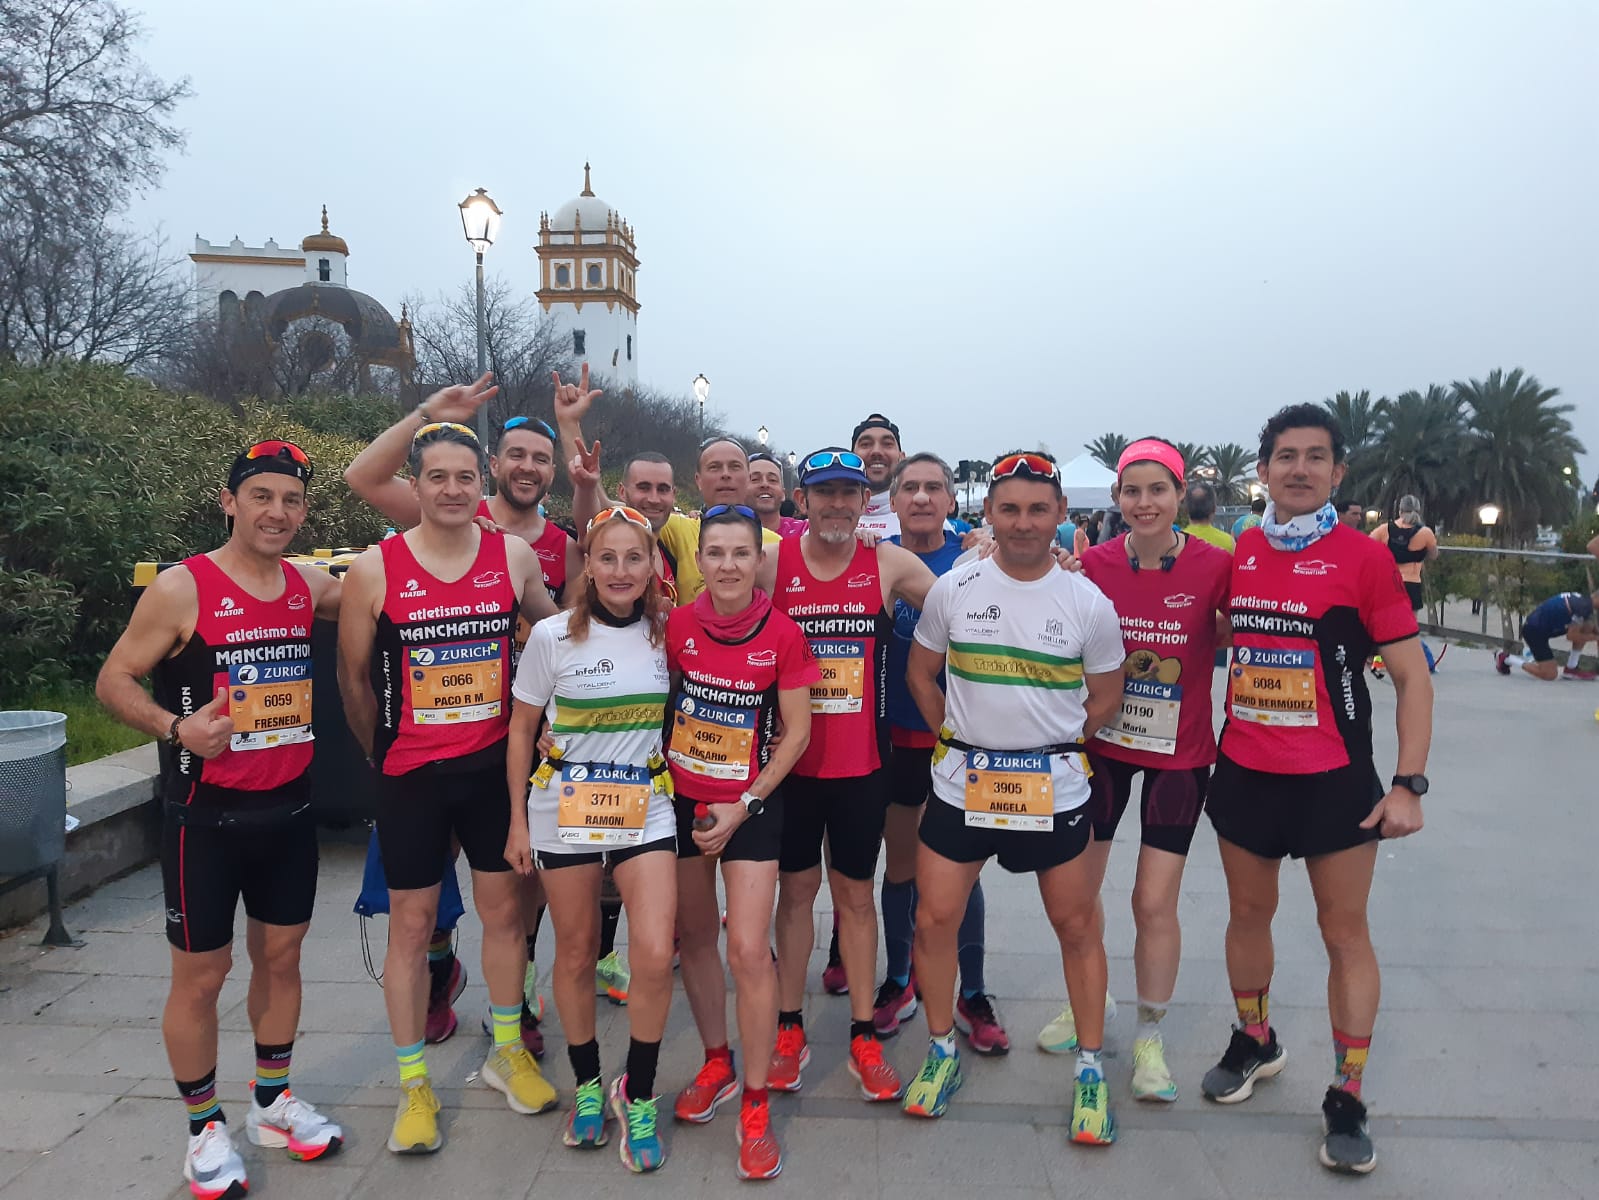 Nuevo éxito de los Atletas del Manchathon en la Marathon de Sevilla 2023

